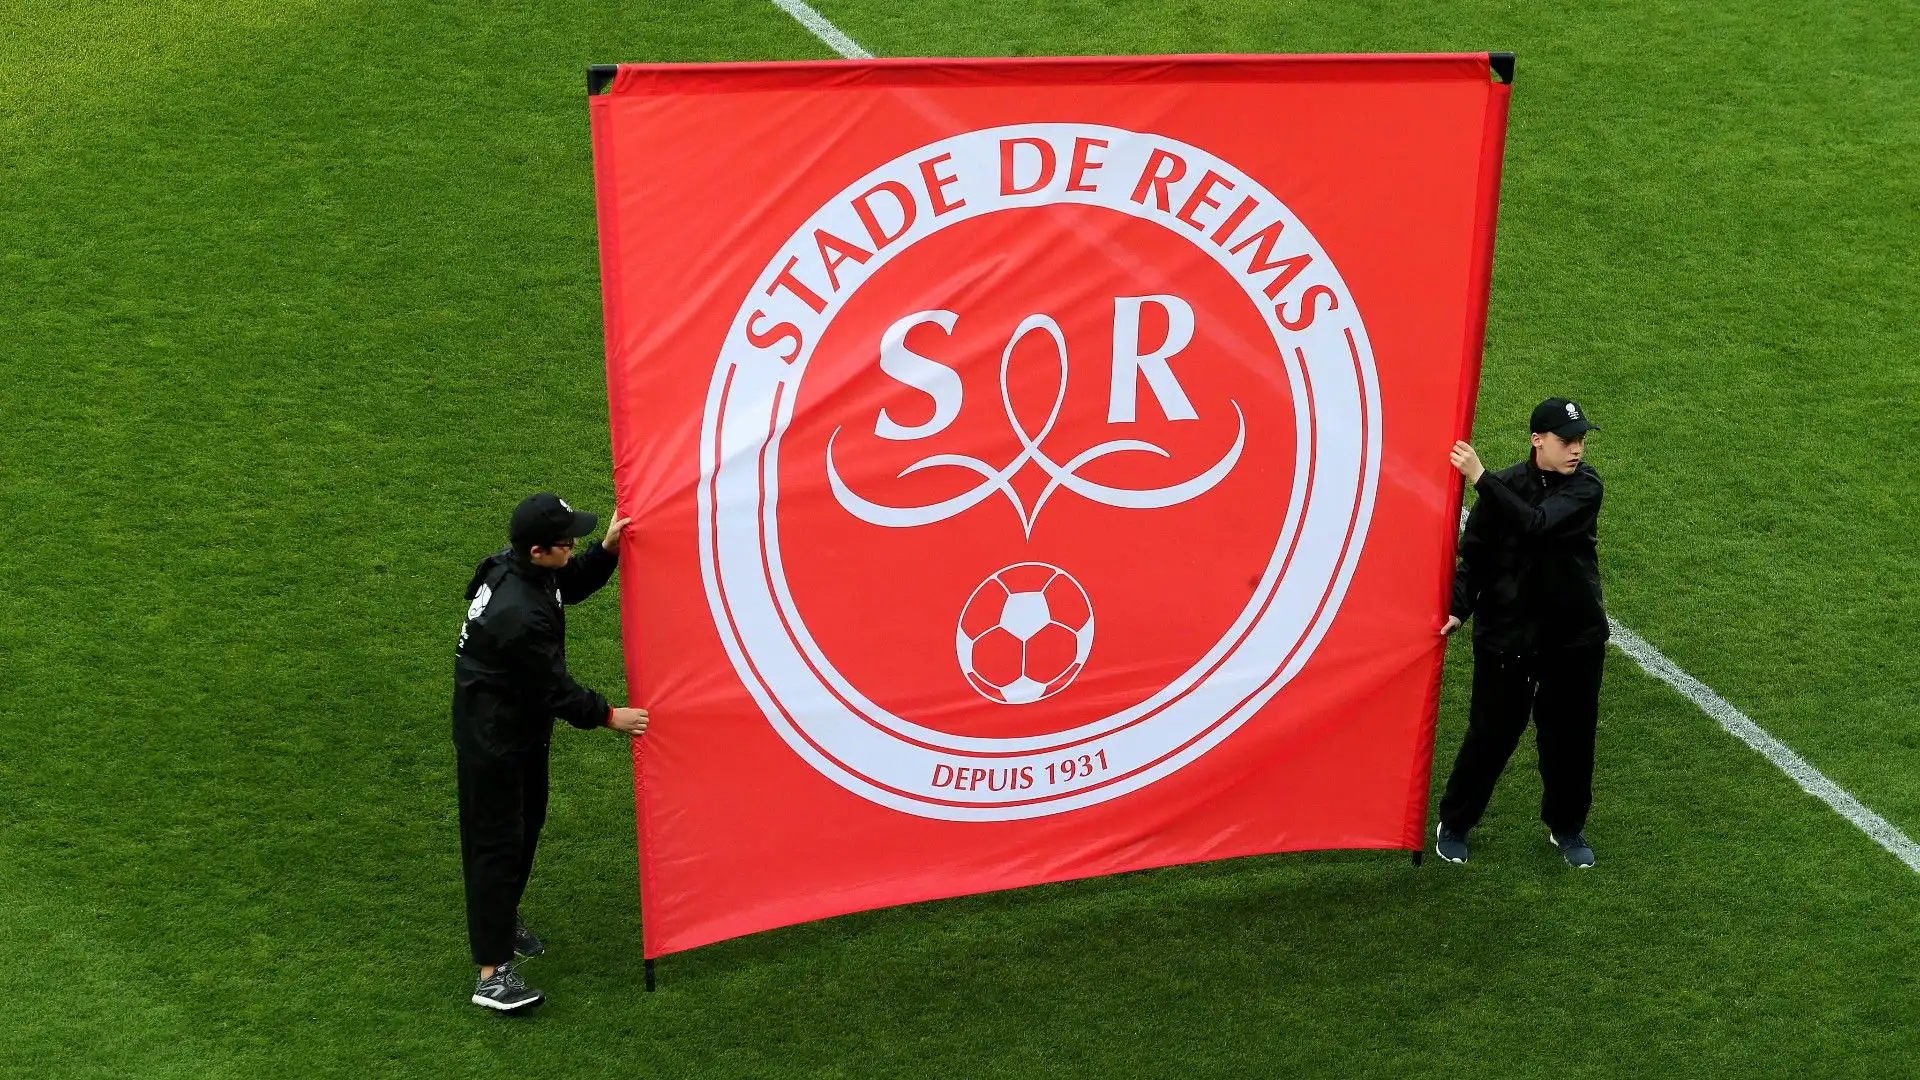 5- Stade de Reims (ESG: 77,3)